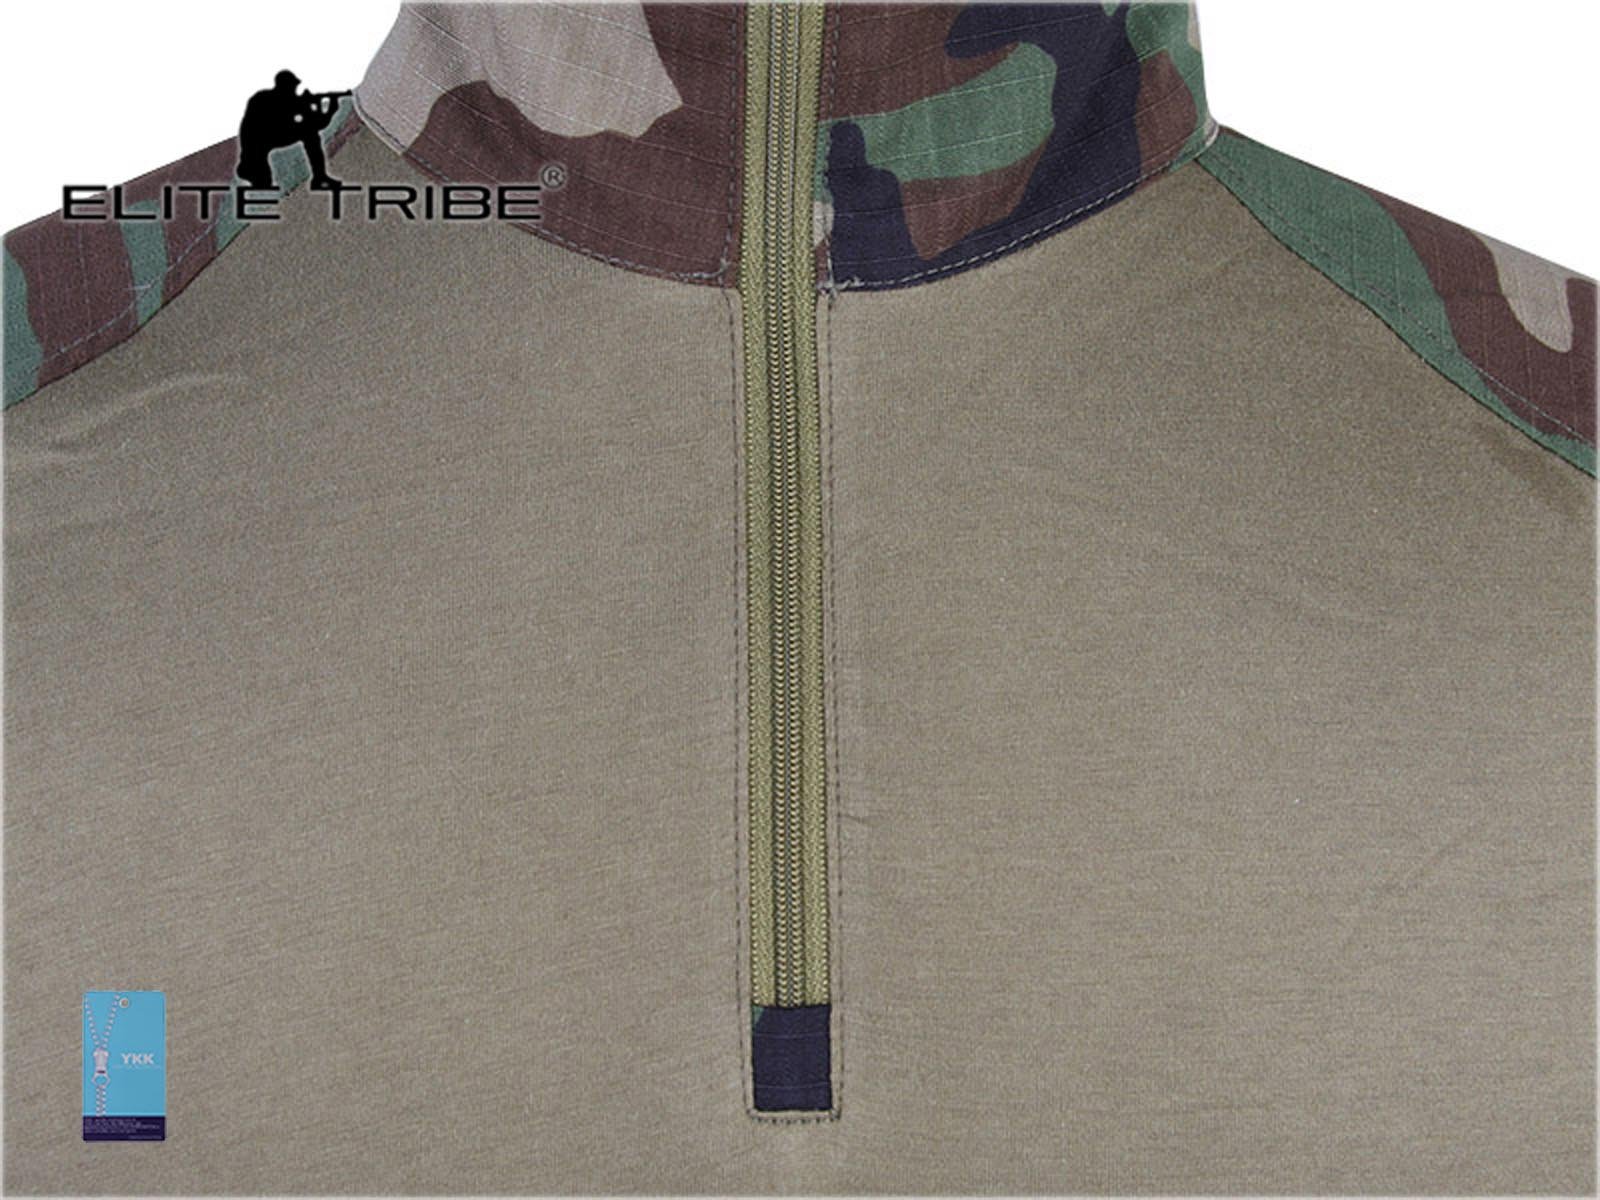 Emerson Airsoft Military bdu Tactical Suit Combat Gen3 Uniform Shirt Pants (Woodland, Large)